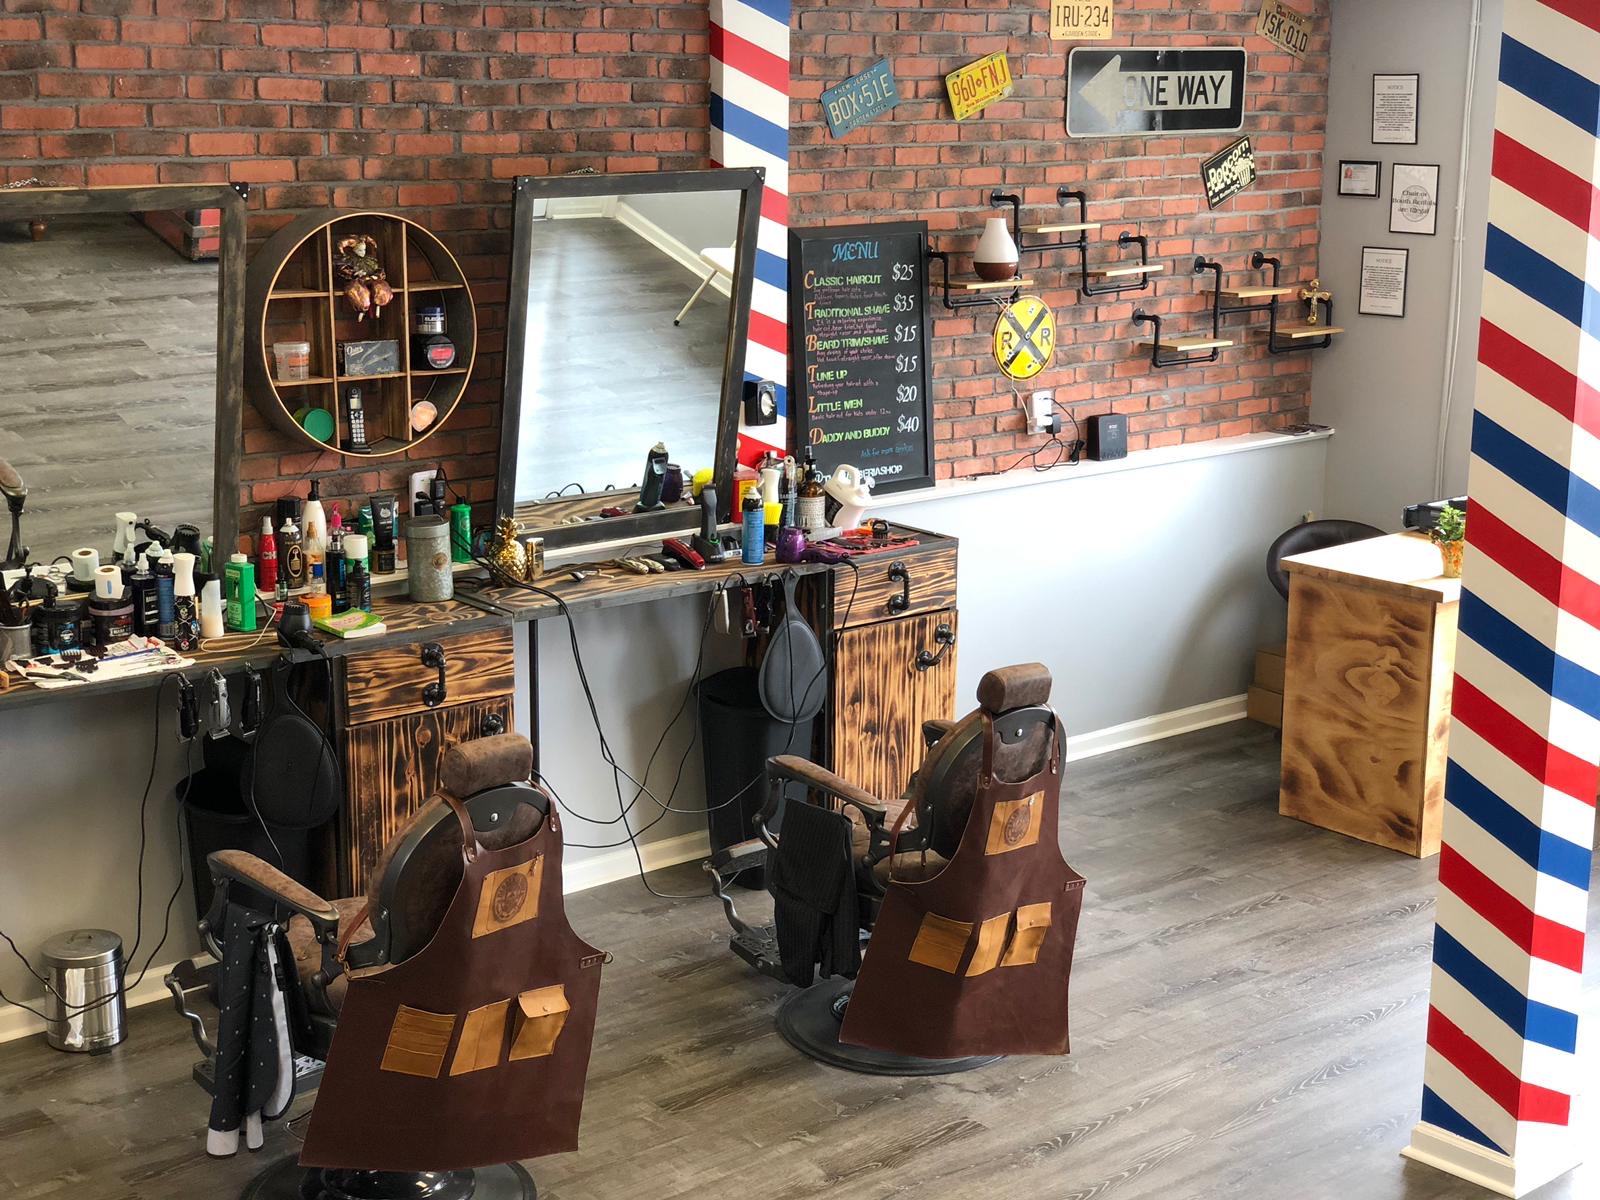 The Shave Factory Premium Barber Cape – Barbersmania